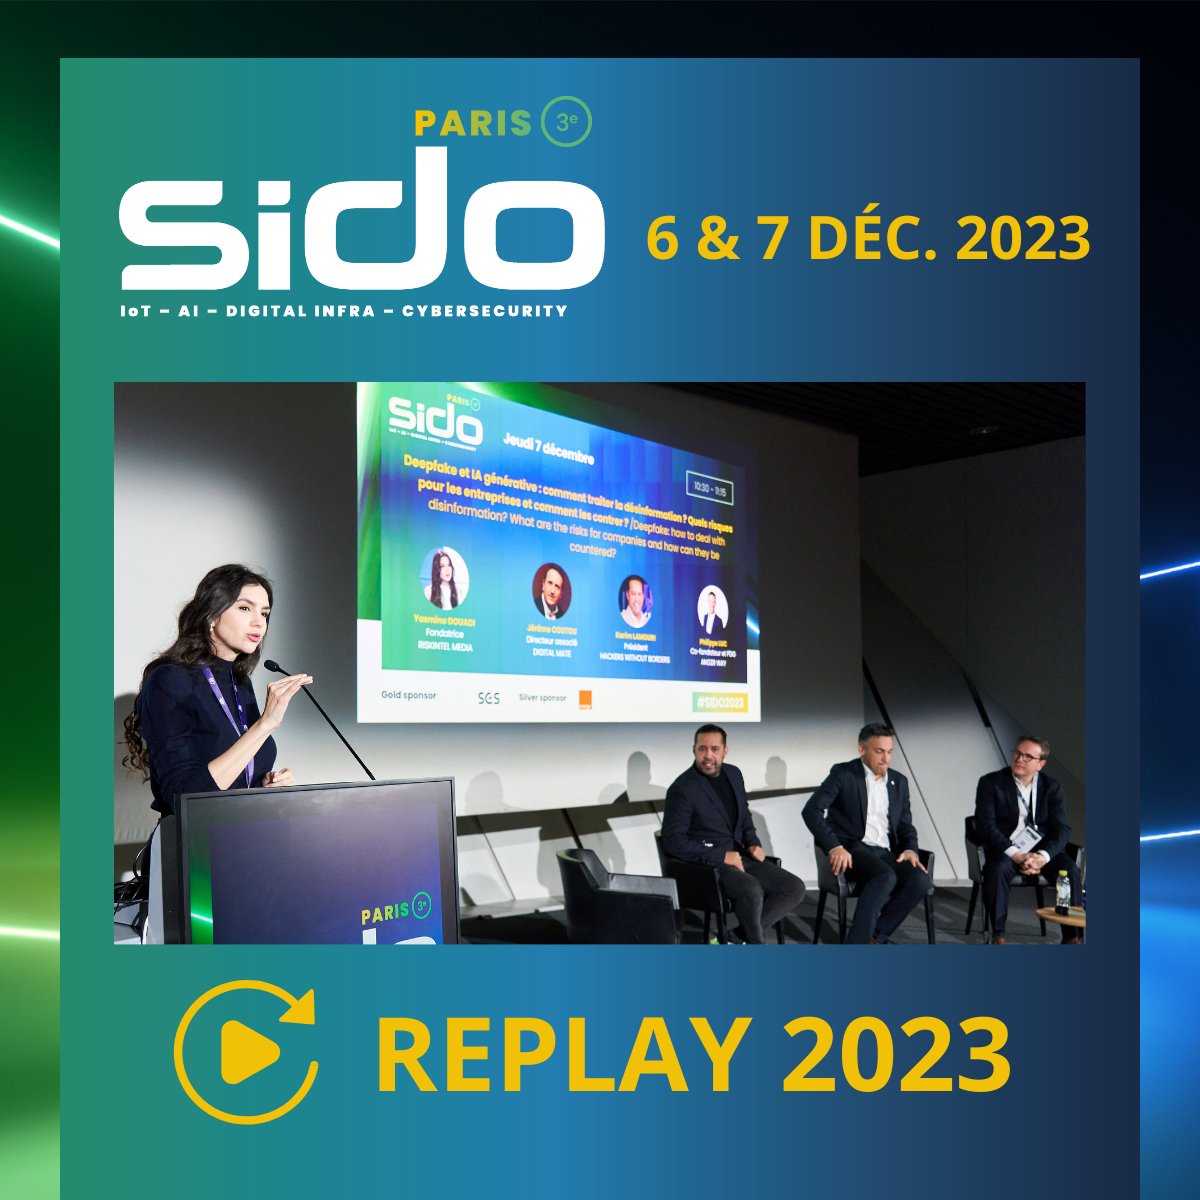 📺 𝗥𝗘𝗚𝗔𝗥𝗗𝗘𝗭 𝗟𝗘𝗦 𝗥𝗘𝗣𝗟𝗔𝗬𝗦 !
Les plénières du #SIDO2023 à Paris sont disponibles en réécoute sur la WEBTV du SIDO ▶️ sido.webtv.live/section/sido-p…

🎧 Bonne écoute !

#SIDO #IA #IoT #tech #innovations #industrie50 #industriedufutur #deepfake #cybersécurité